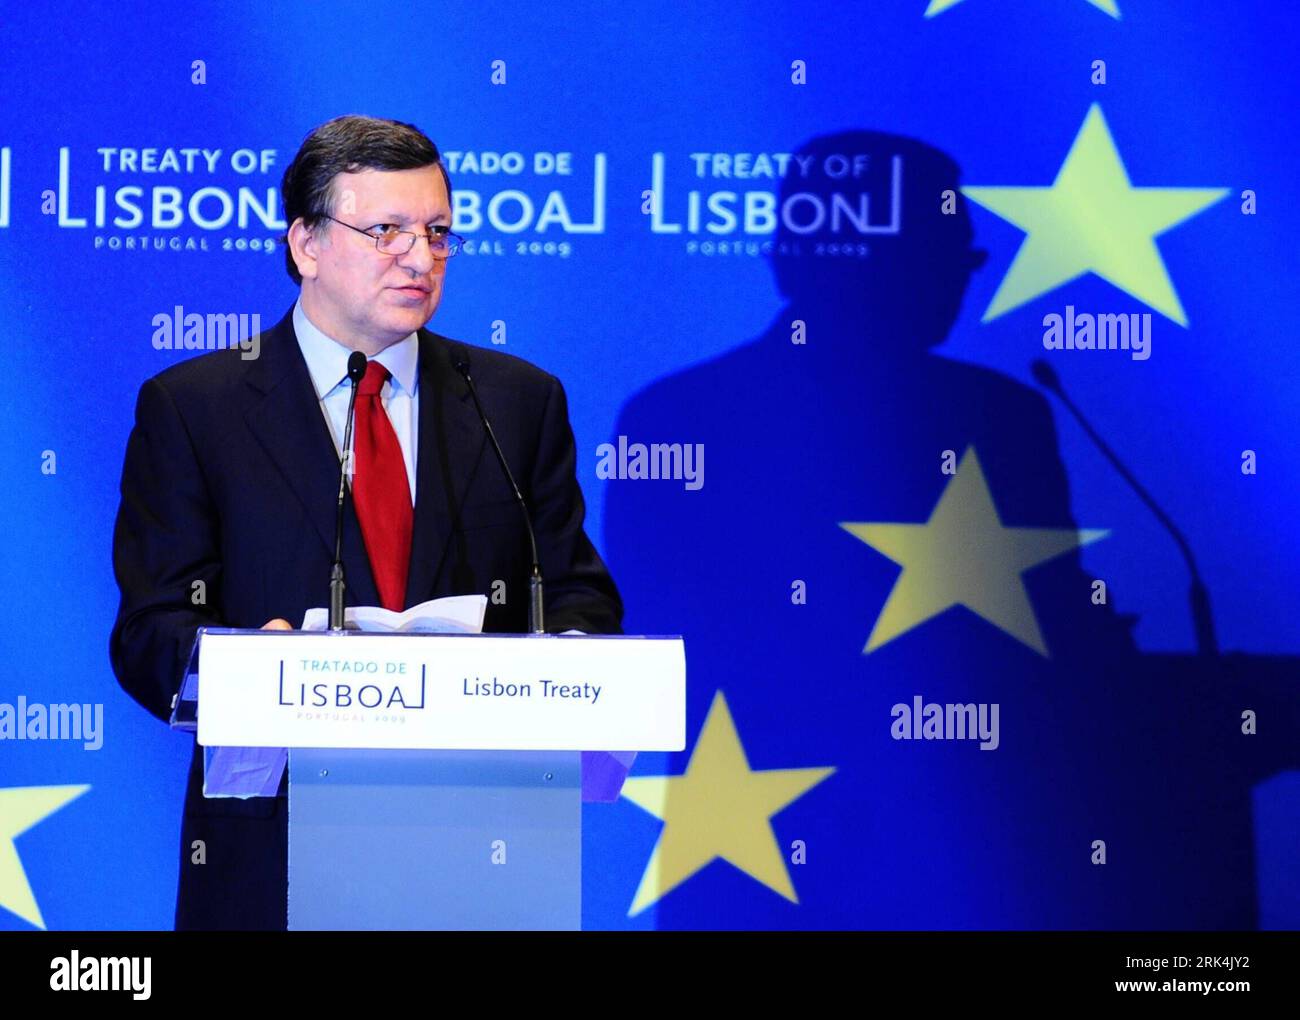 091202 -- LISBONA, 2 dicembre 2009 Xinhua -- il presidente della Commissione europea Jose Manuel Barroso tiene un discorso durante la cerimonia per celebrare l'entrata in vigore del trattato di Lisbona dell'Unione europea a Lisbona, capitale del Portogallo, 1 dicembre 2009. I leader dell'Unione europea si sono riuniti a Lisbona martedì per celebrare l'inaugurazione del trattato di Lisbona. Xinhua/Zeng Yi lmz 4PORTUGAL-LISBONA-TRATTATO-INAUGURAZIONE PUBLICATIONxNOTxINxCHN Foto Stock